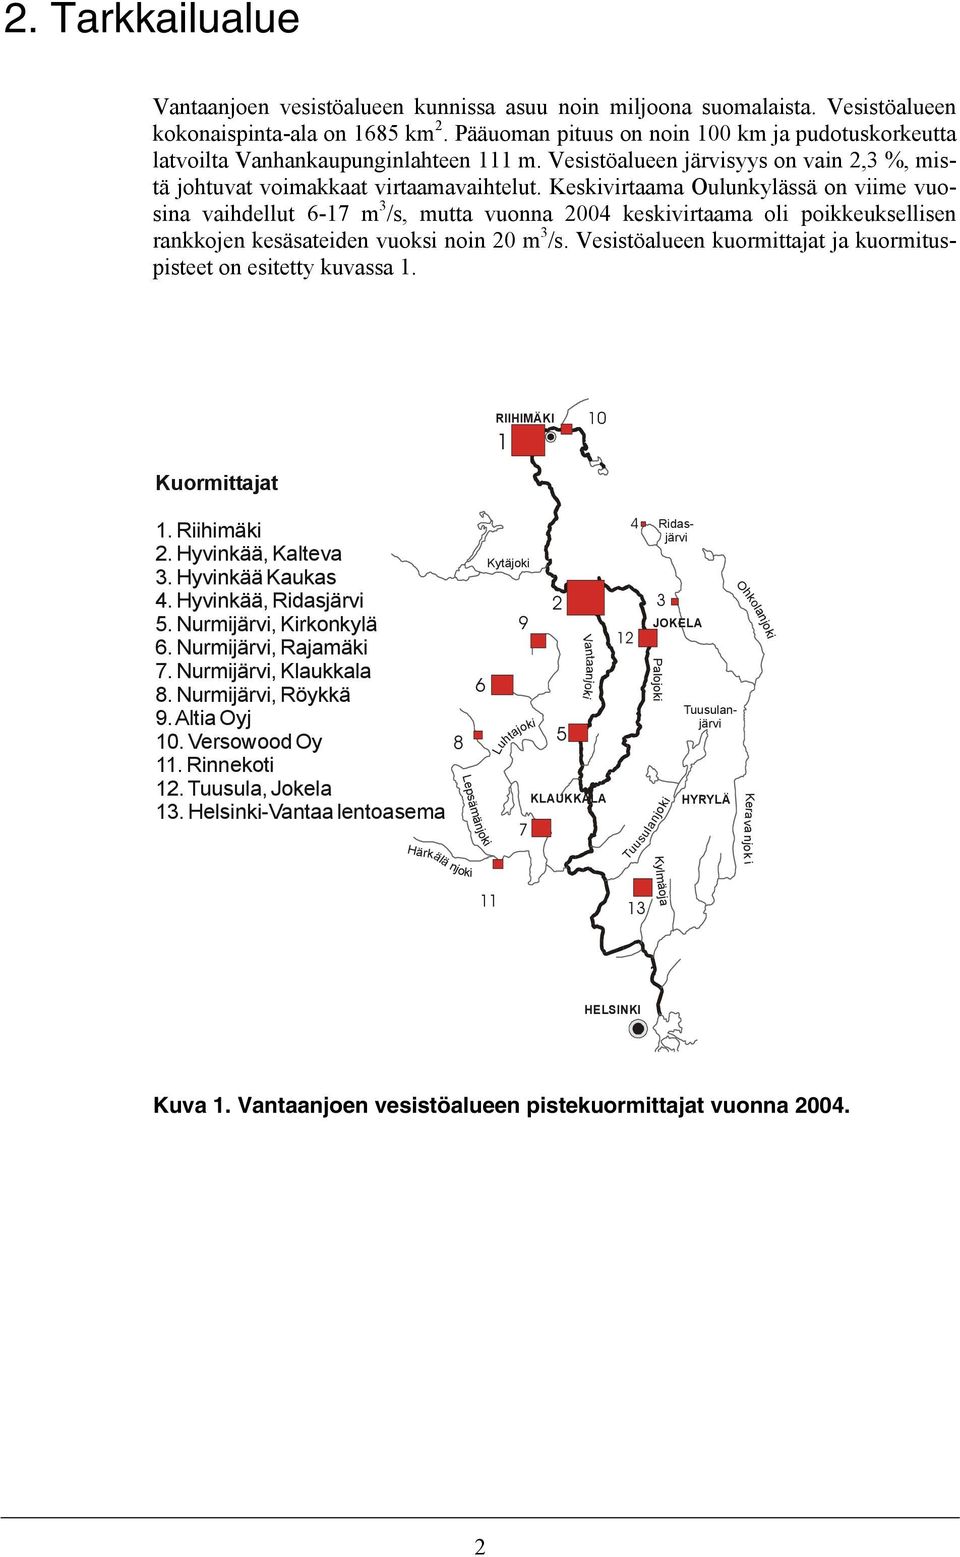 Keskivirtaama Oulunkylässä on viime vuosina vaihdellut 6-17 m 3 /s, mutta vuonna 2004 keskivirtaama oli poikkeuksellisen rankkojen kesäsateiden vuoksi noin 20 m 3 /s.